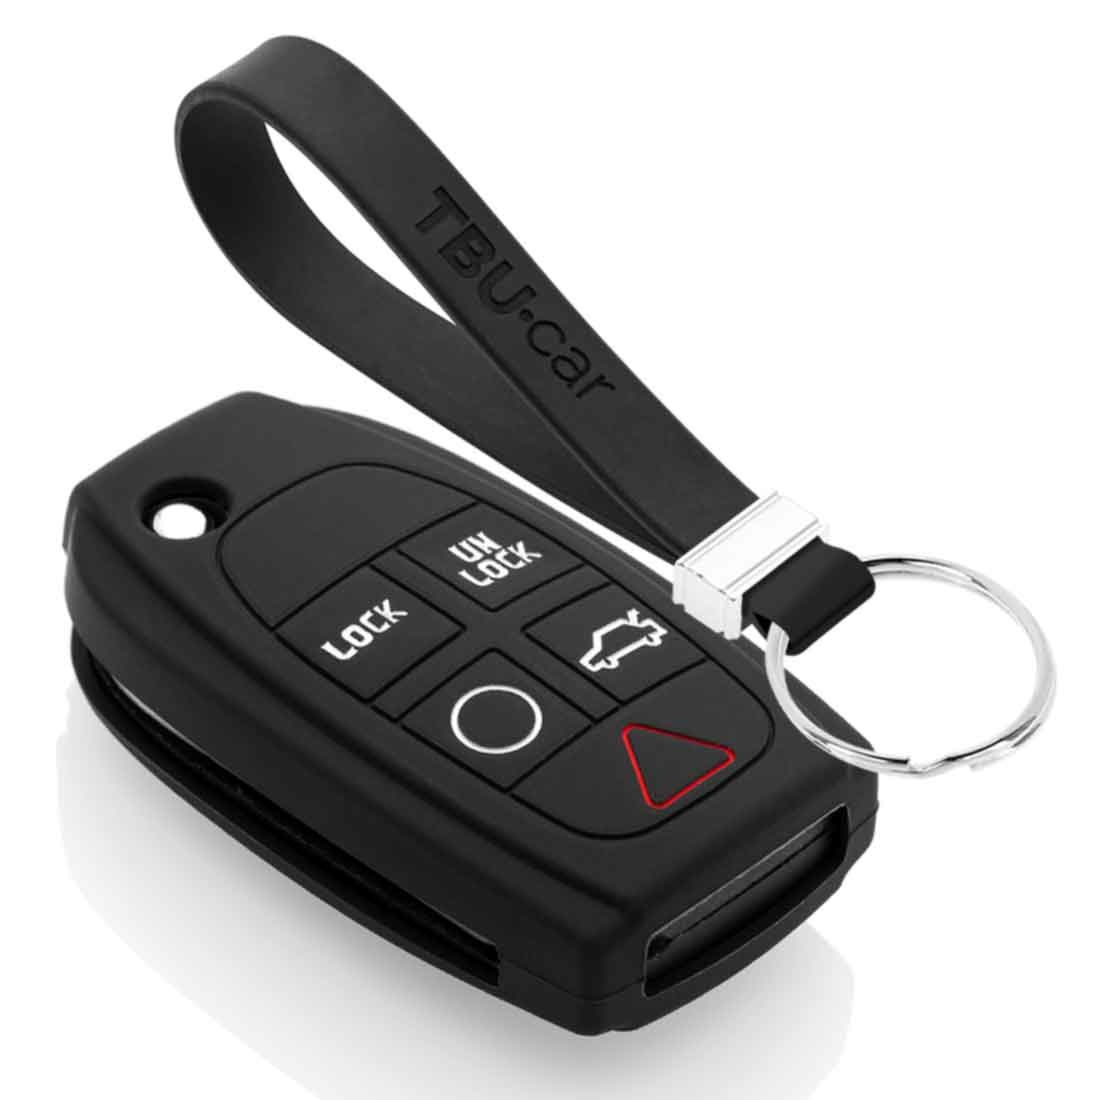 TBU car TBU car Autoschlüssel Hülle kompatibel mit Volvo 5 Tasten - Schutzhülle aus Silikon - Auto Schlüsselhülle Cover in Schwarz